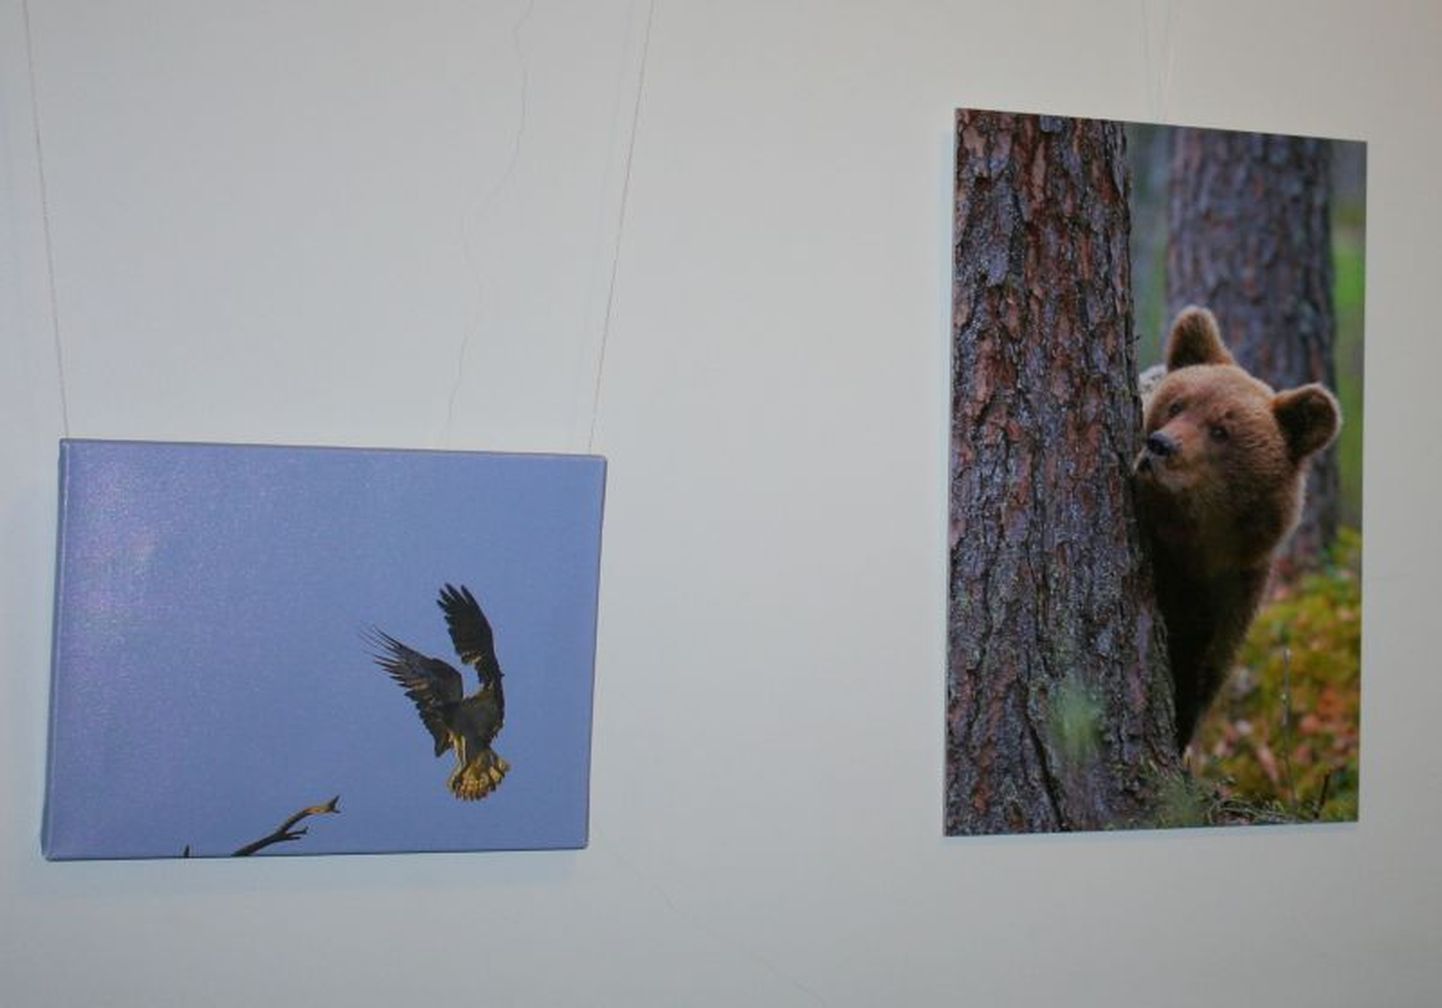 Viljandi maavalitsuse teise korruse fuajees saab veebruari lõpuni vaadata Leo Arneki loodusfotode näitust "Hetki looduses II".